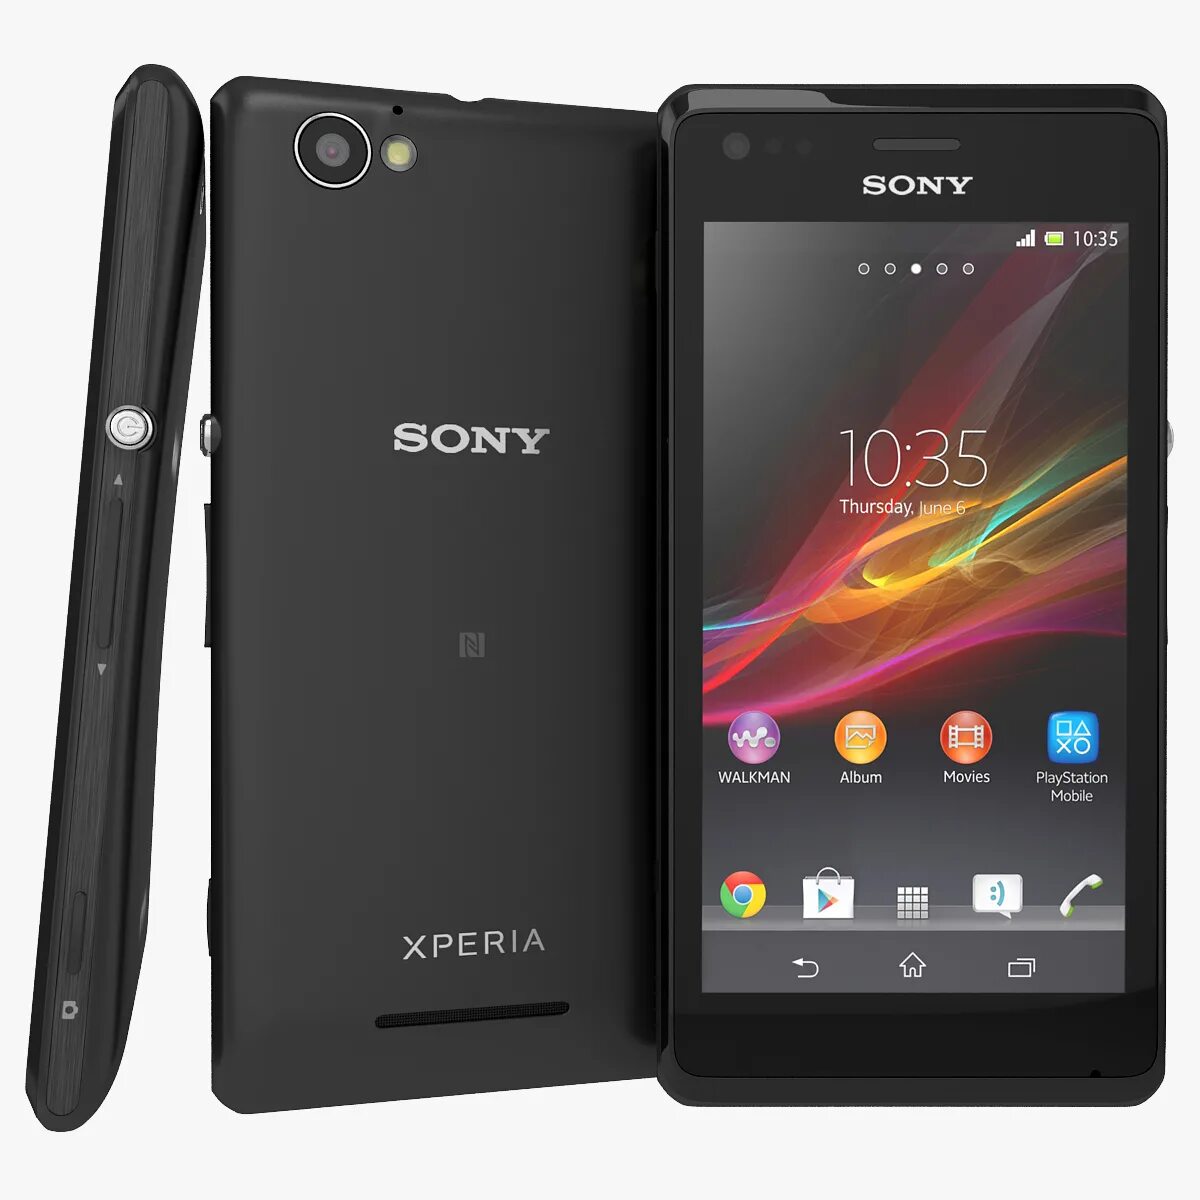 Цена телефона xperia. Sony Xperia c2005. Sony Xperia m c2005. Sony Xperia c1905. Sony Xperia c6503.